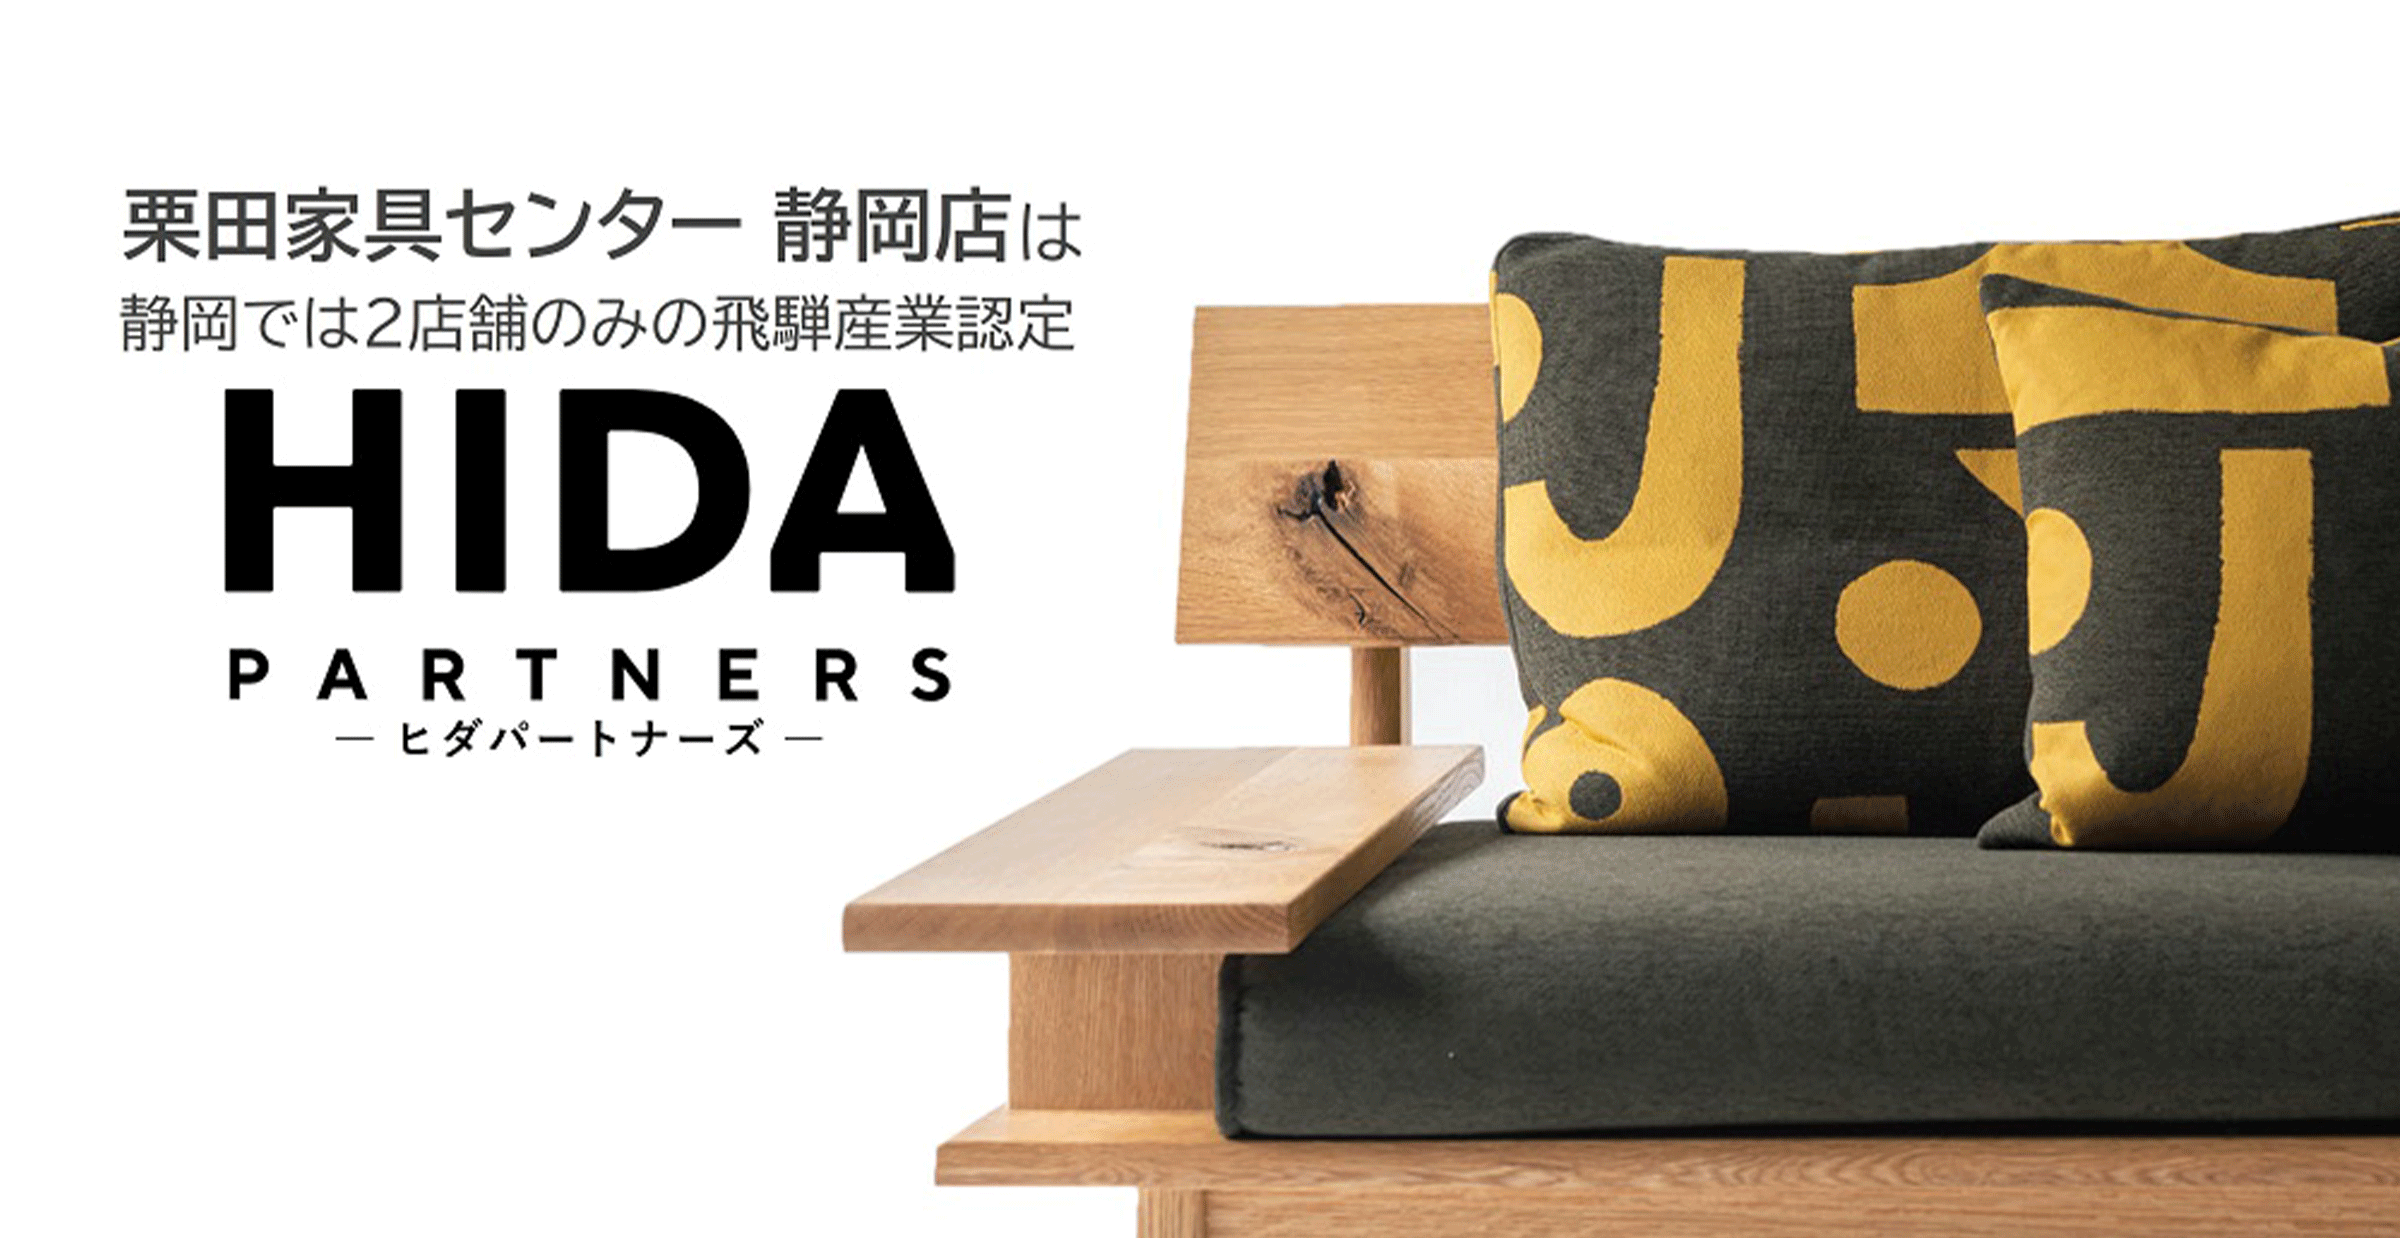 栗田家具センター静岡店は「HIDA PARTNERS(ヒダパートナーズ)」に選ばれました